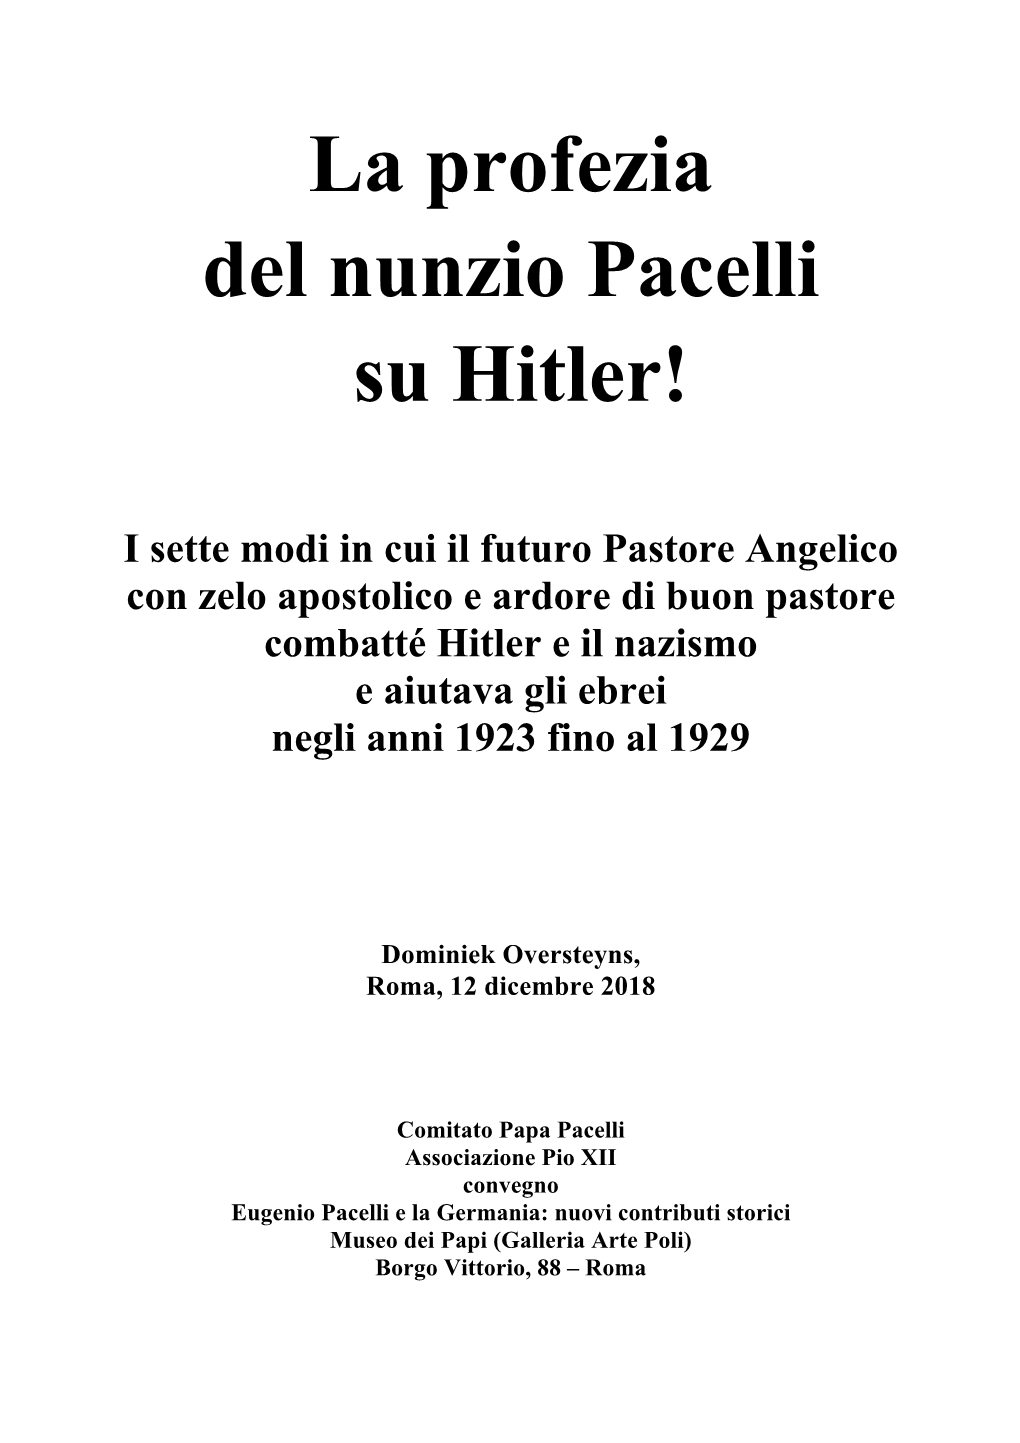 La Profezia Del Nunzio Pacelli Su Hitler!